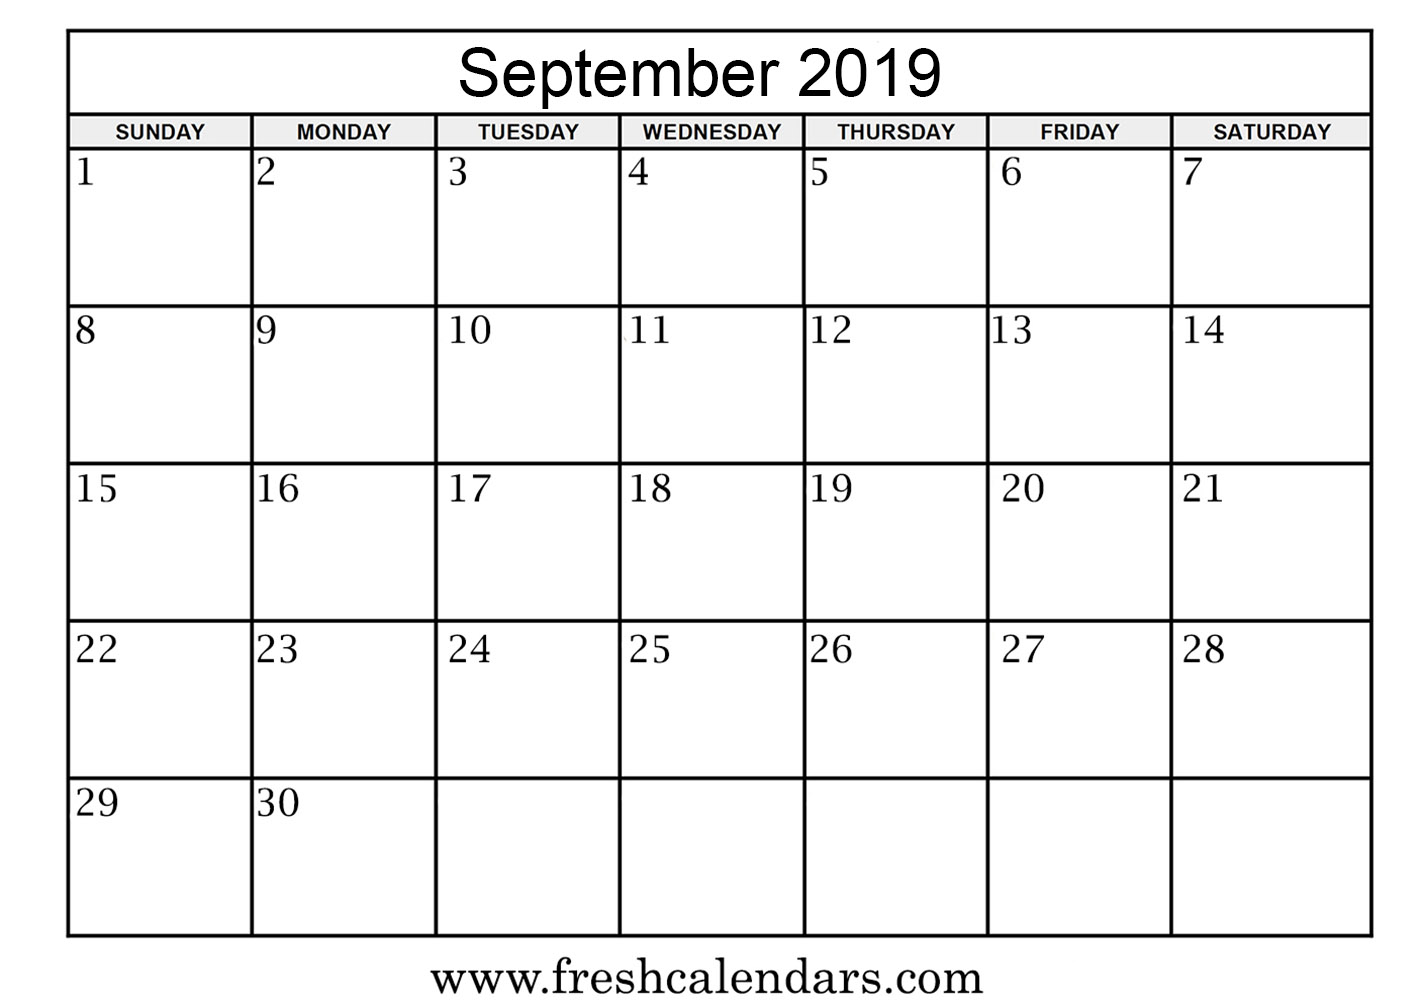 September 2019 Calendars Printable Online